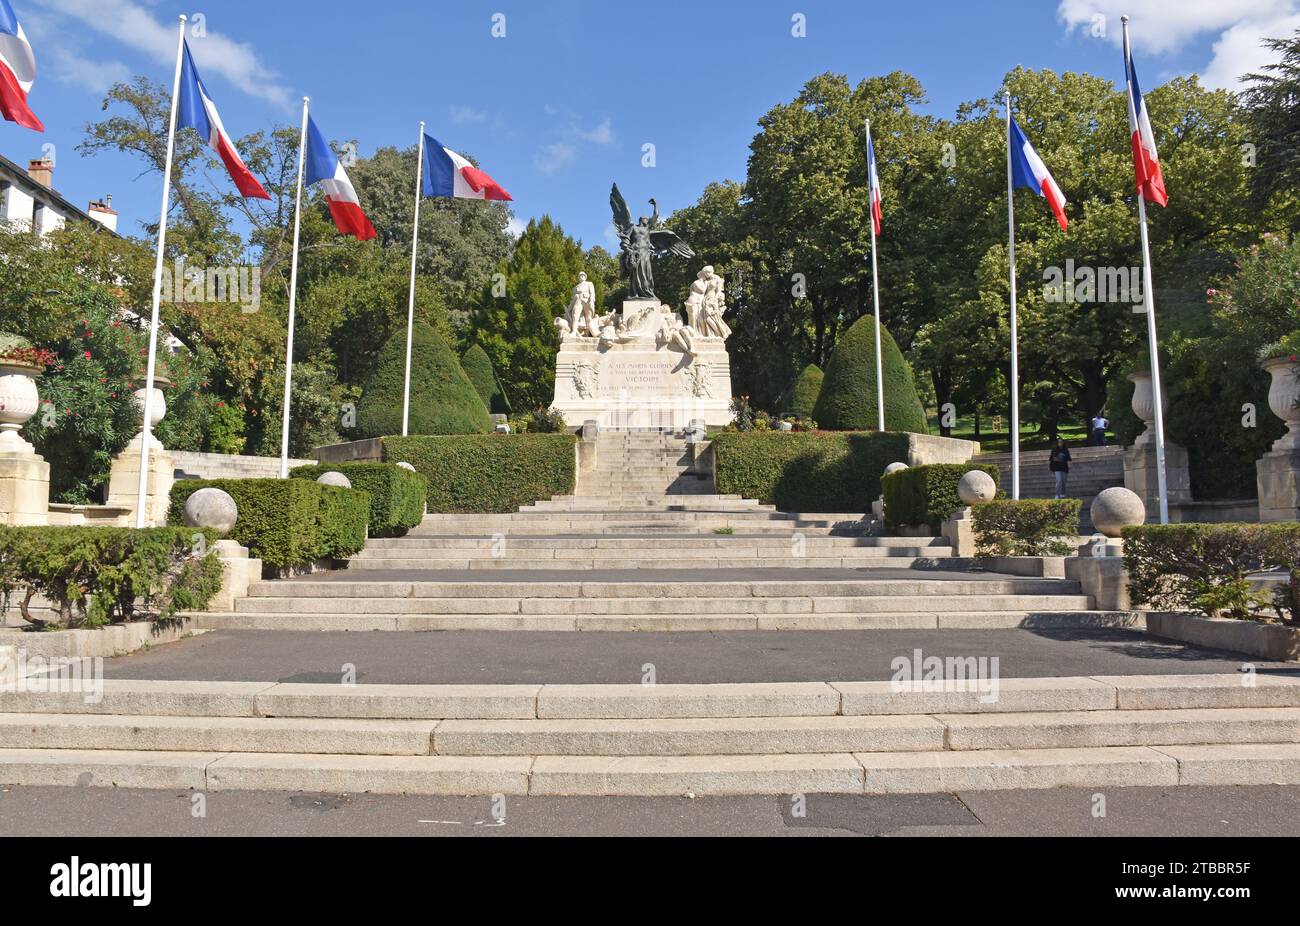 Le monument aux morts, Mémorial de guerre, de Béziers, France, construit en 1925, exceptionnellement, ne liste pas les soldats individuels. Sculpteur Jean-Antoine Injalbert Banque D'Images